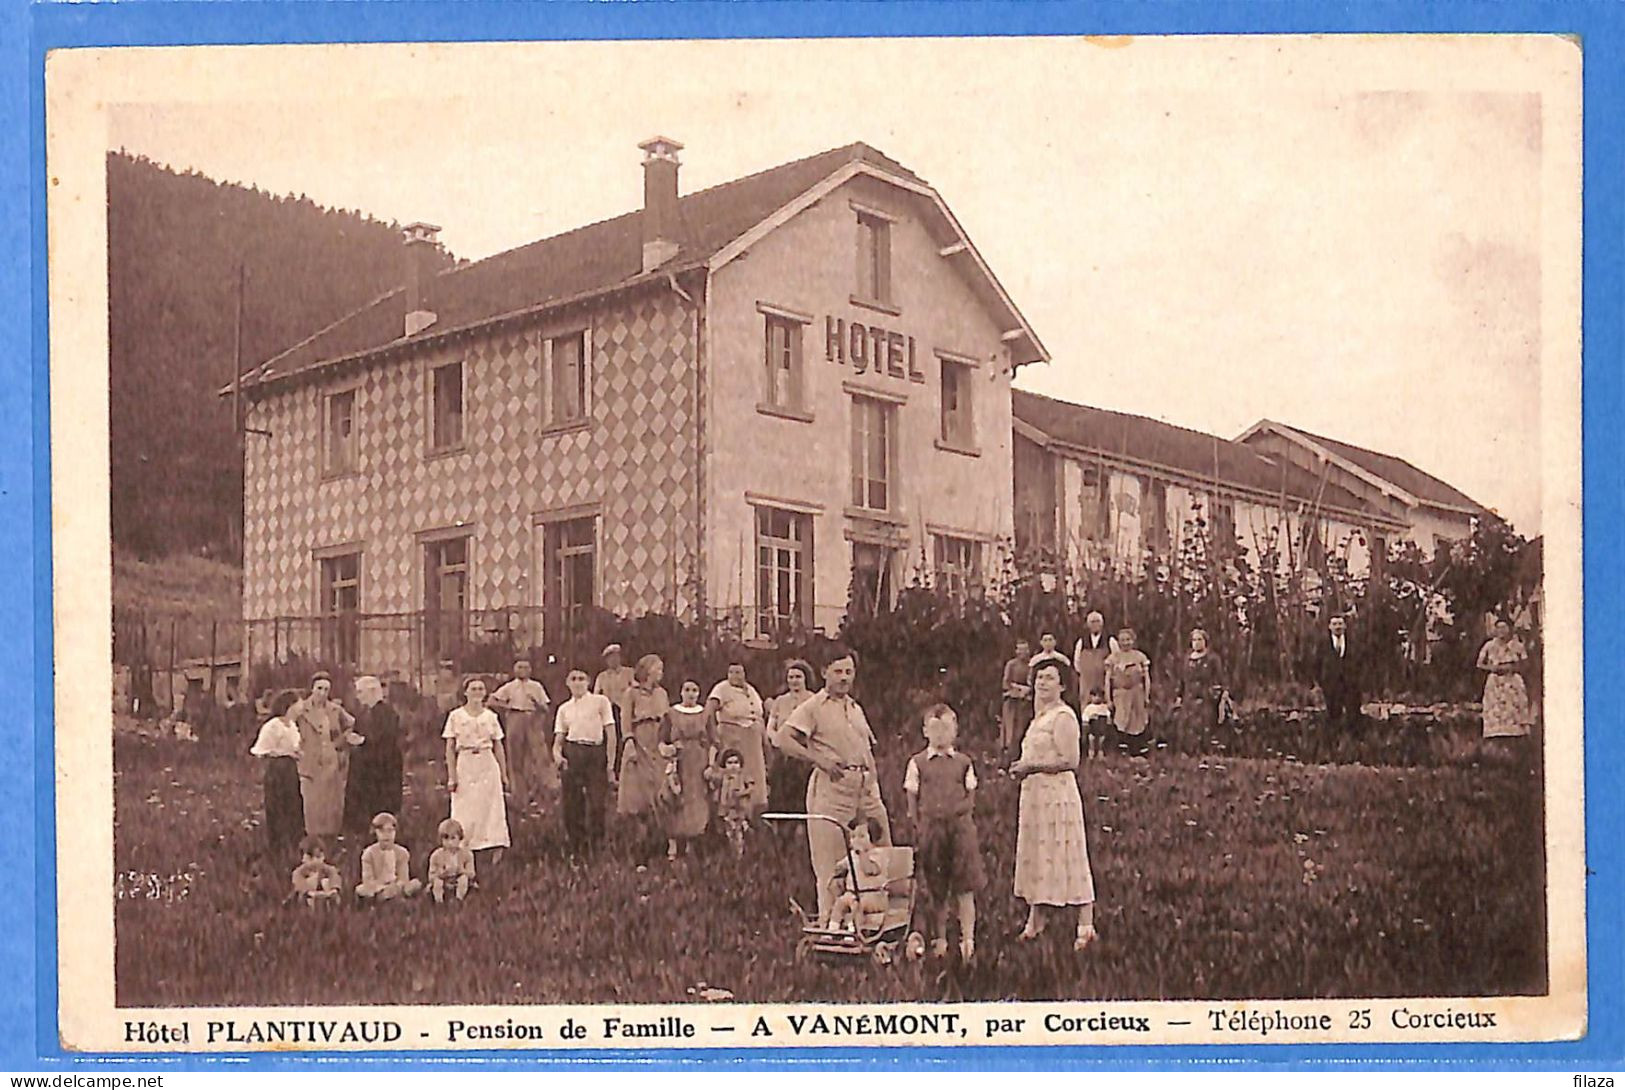 88 - Vosges - Vanemont - Hotel Plantivaud (N14674) - Corcieux